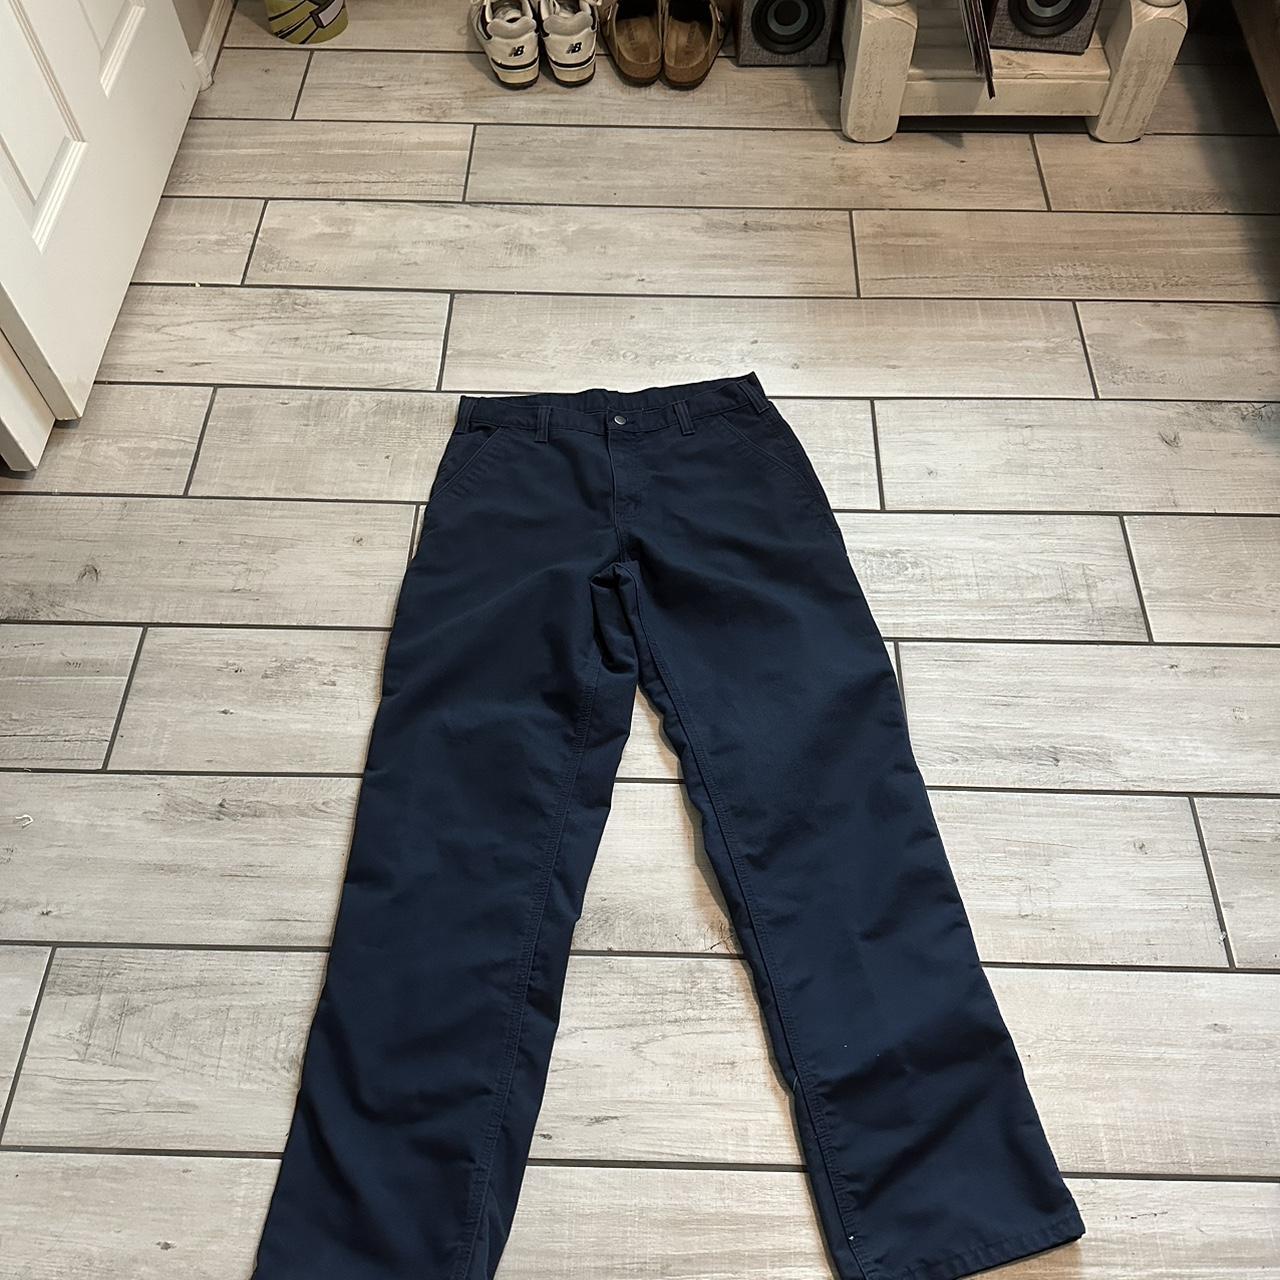 Navy Blue Carhartt pants -34x34 -no flaws #carhartt - Depop